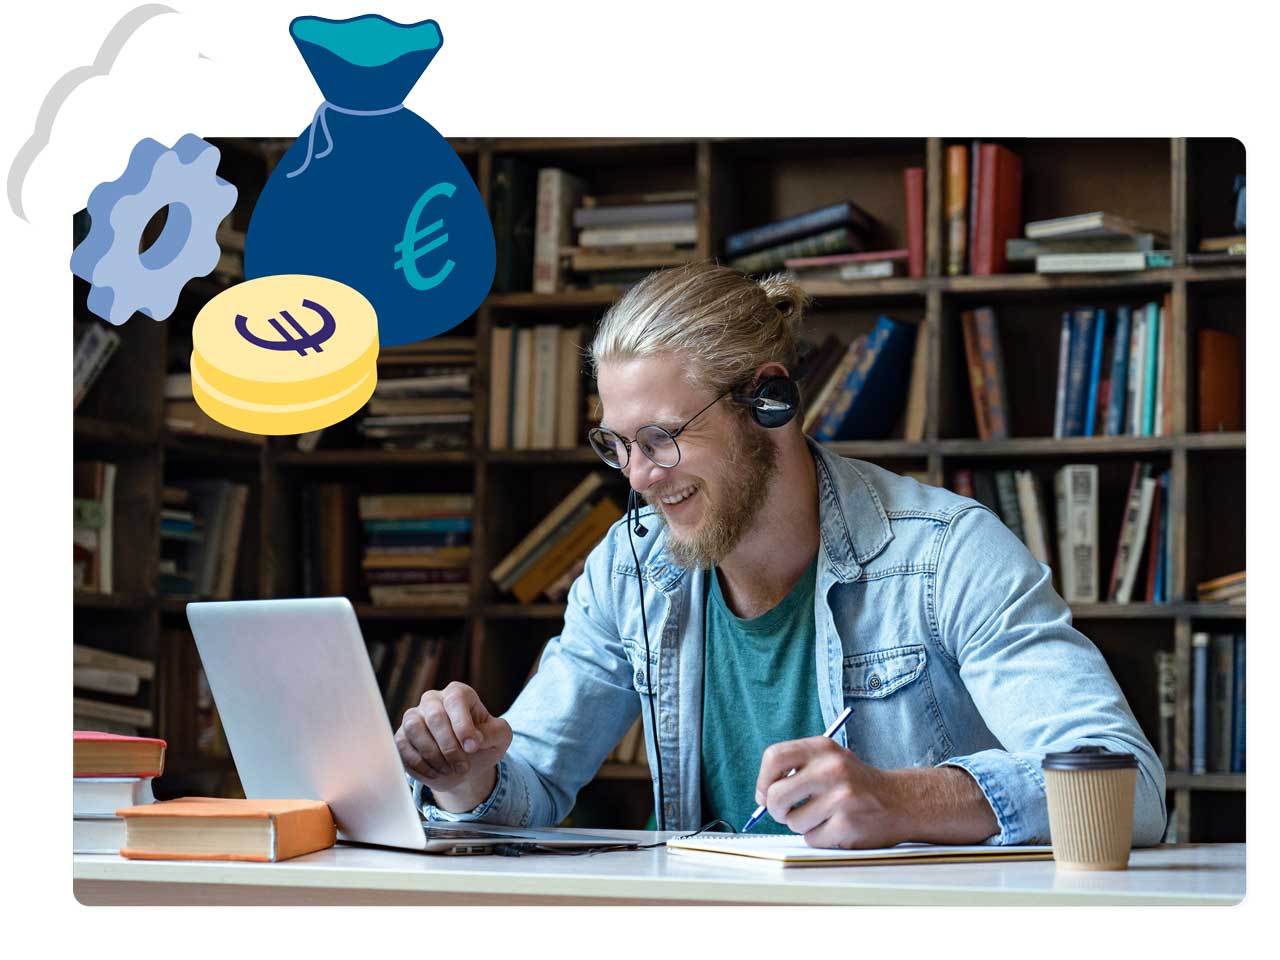 Ein blonder Mann sitzt an einem Schreibtisch mit seinem Laptop, ein paar Büchern und einem Becher Kaffee. Er trägt Kopfhörer und blickt auf seinen Laptop während er Sachen auf seinem Block notiert.